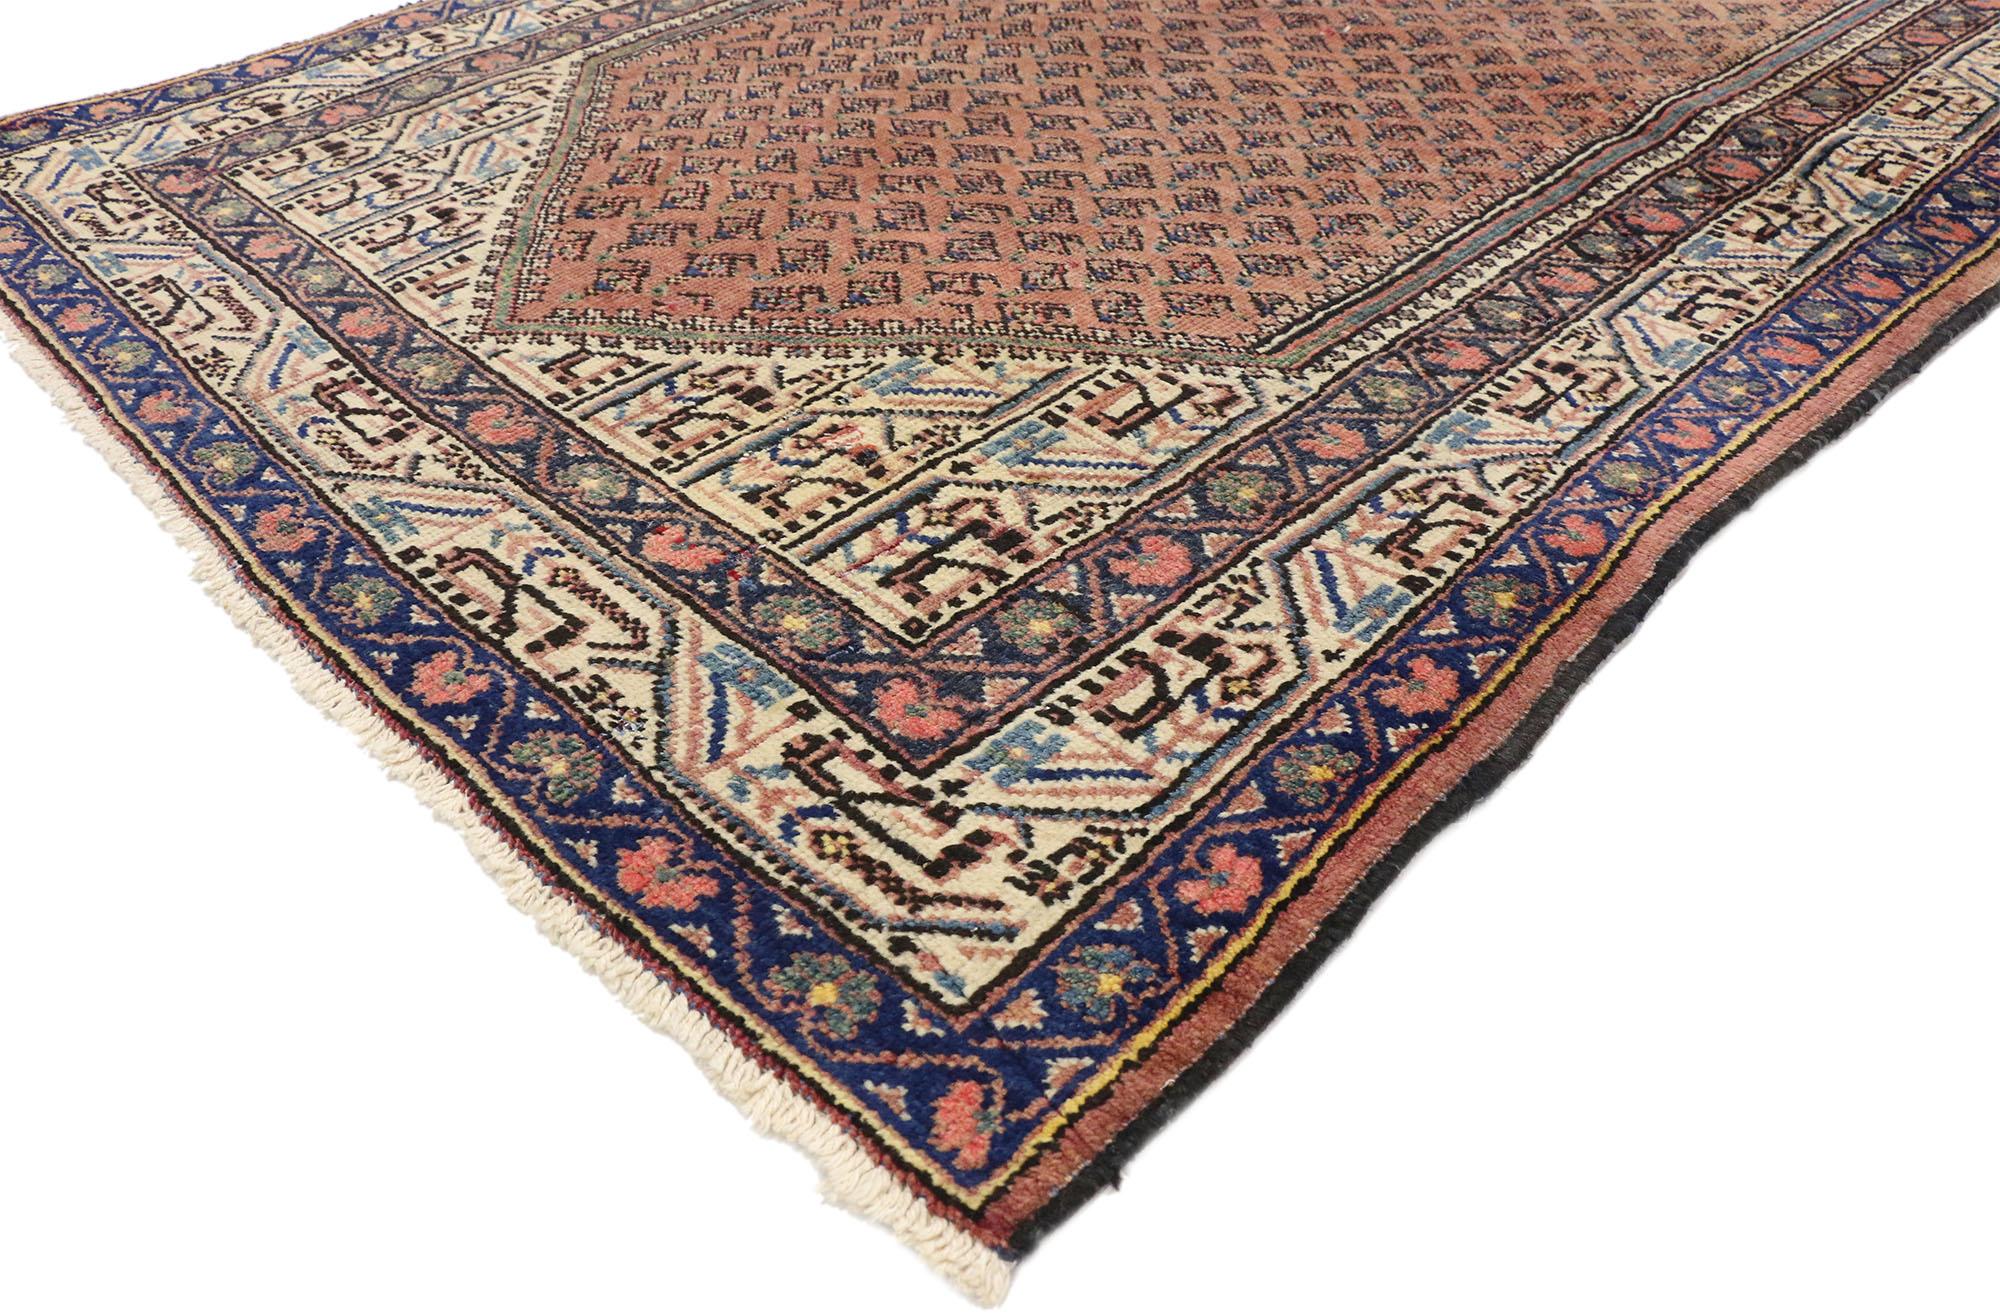 74580 Vintage Persian Mahal Teppich mit English Traditional Stil 04'02 x 06'09. Dieser handgeknüpfte persische Mahal-Teppich aus Wolle verkörpert den traditionellen englischen Stil auf wunderbare Art und Weise. Das abgewetzte rostfarbene Feld ist